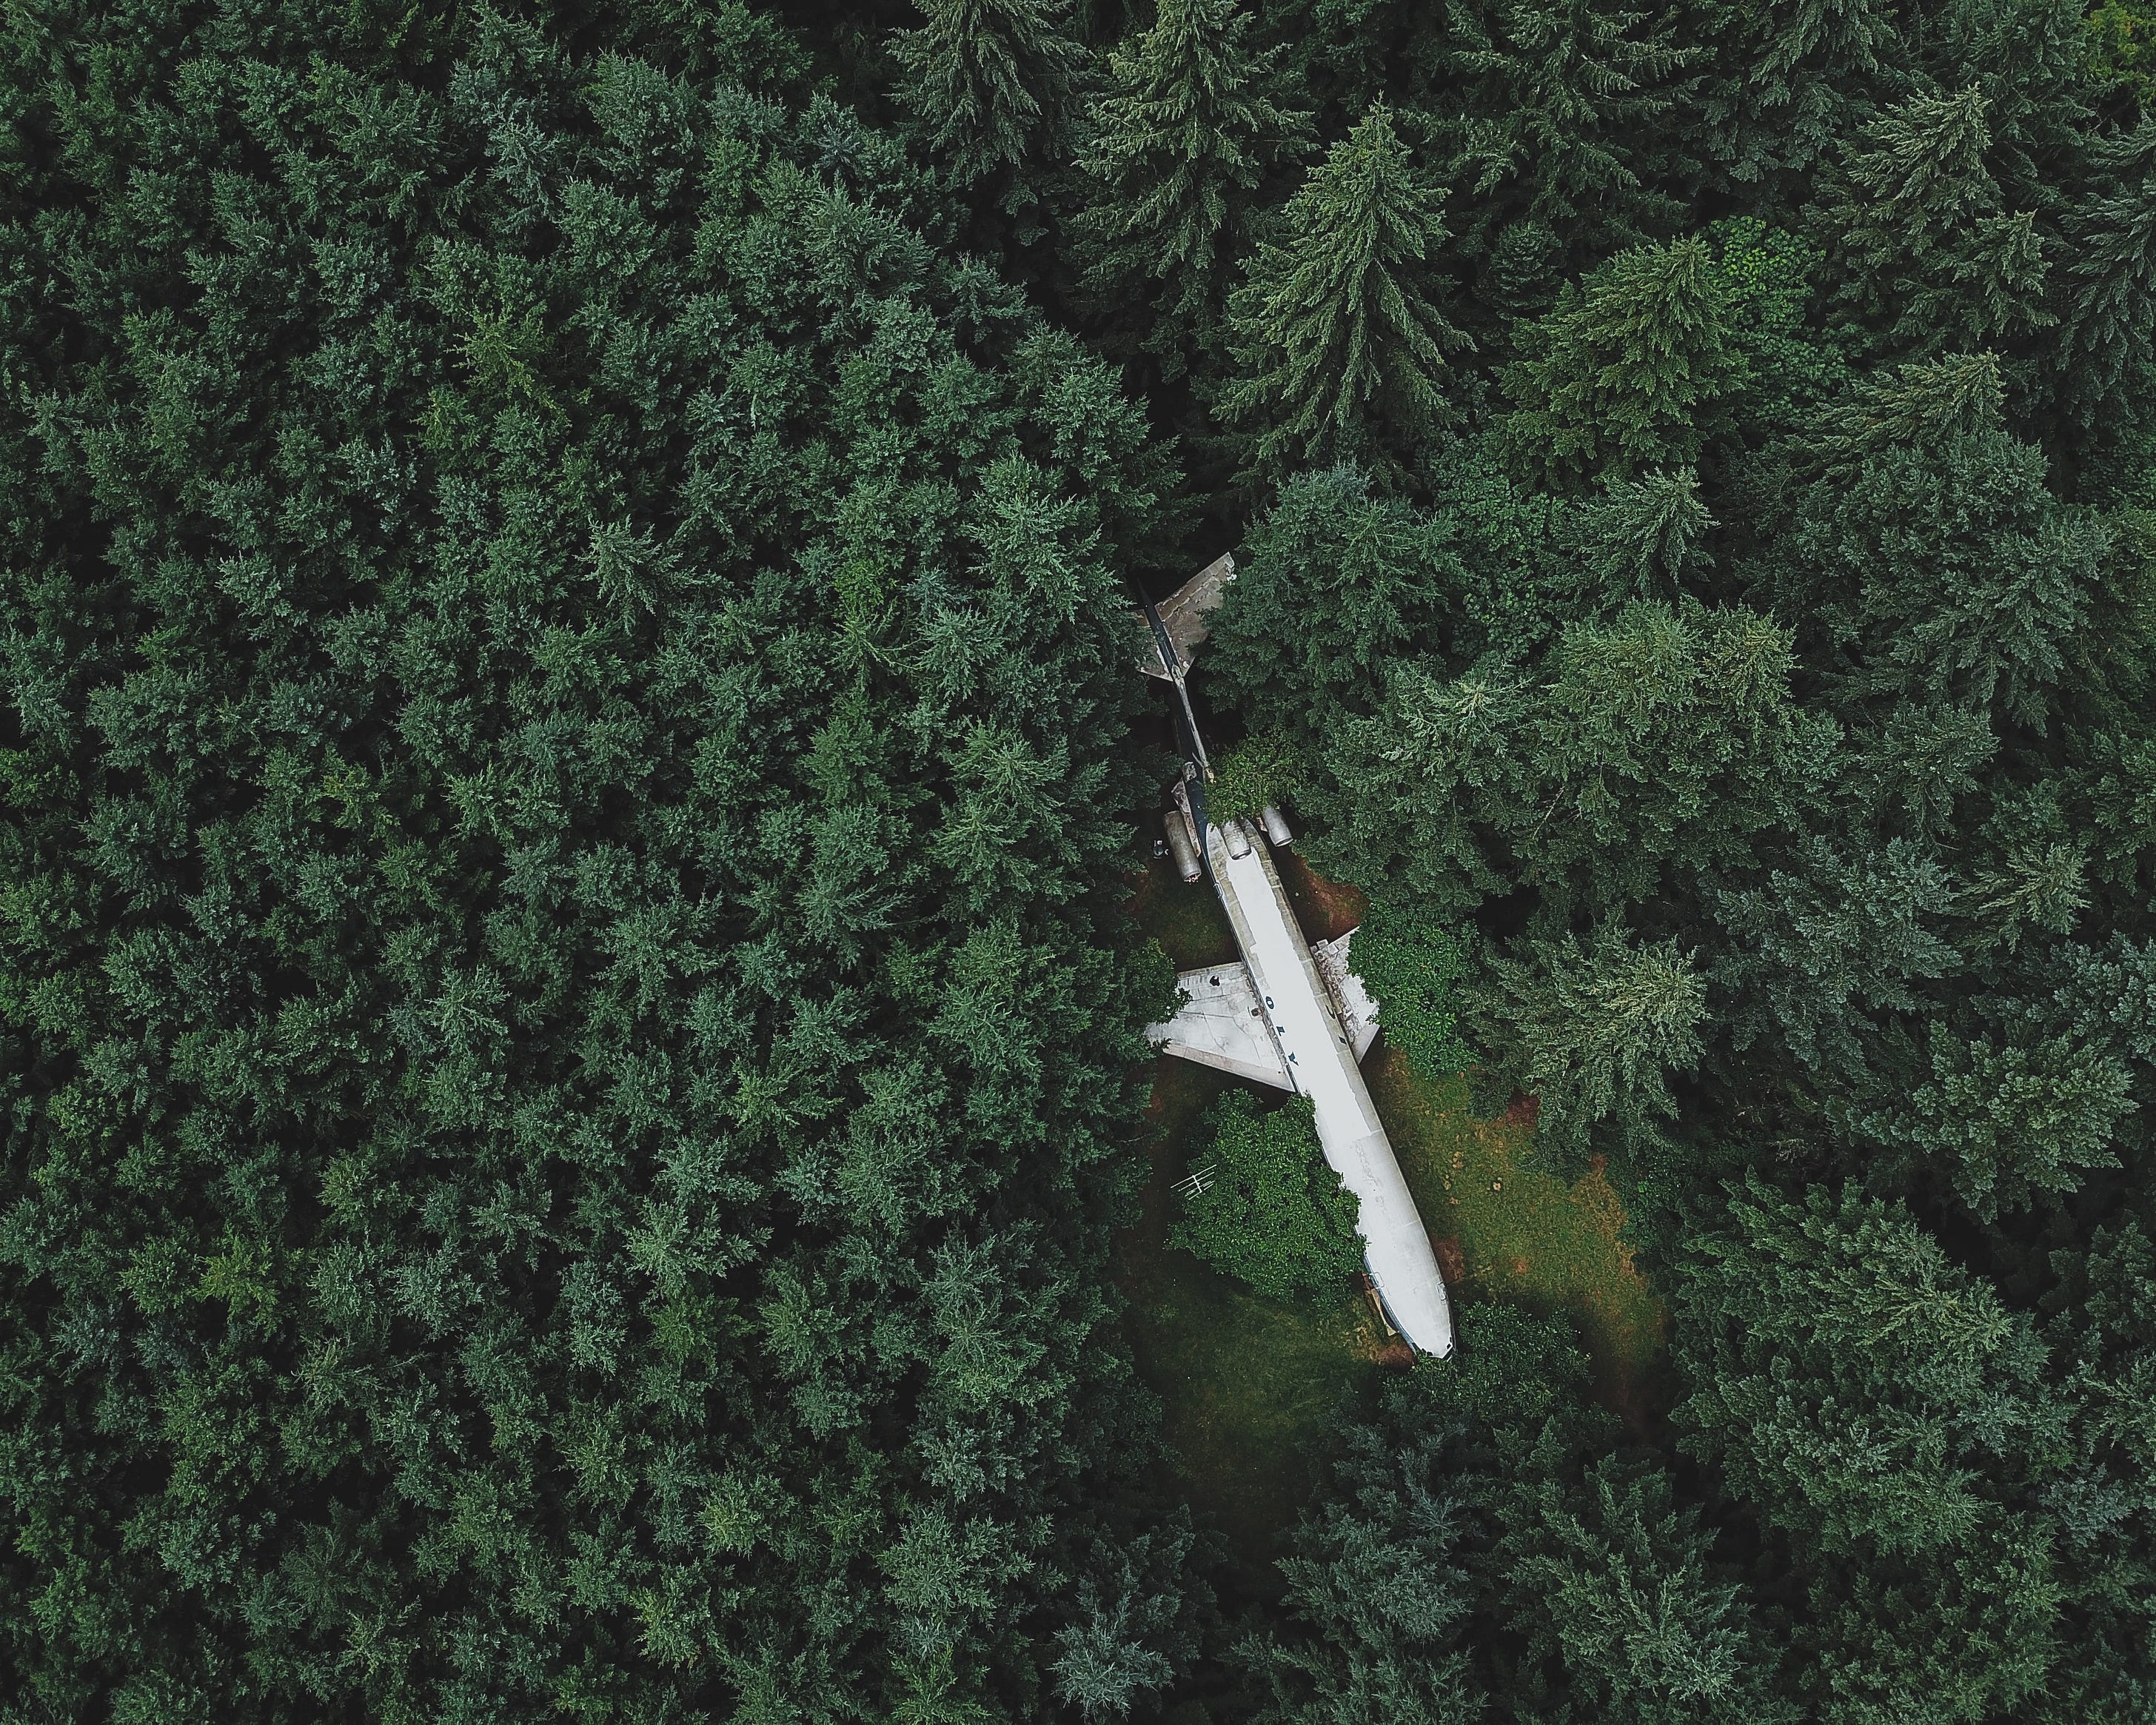 Un avion au milieu de la forêt